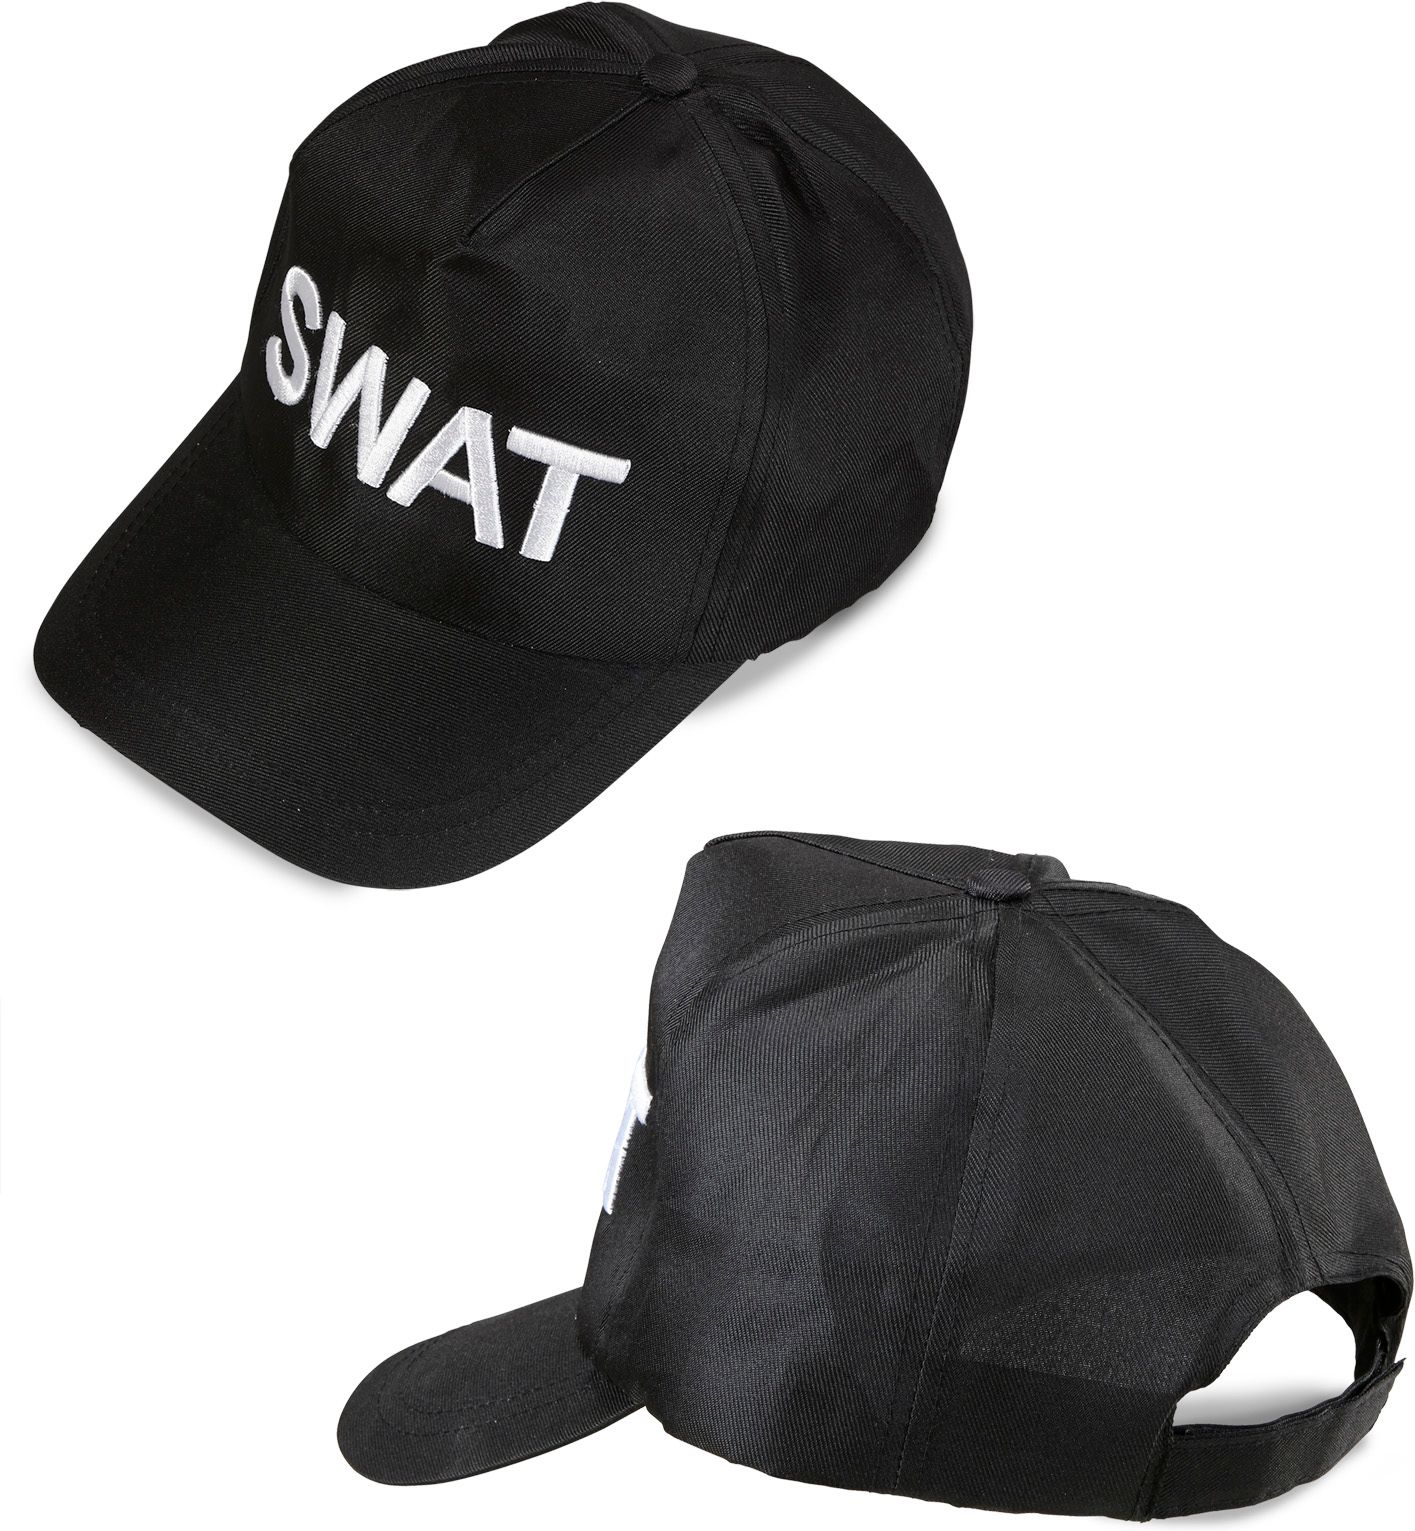 Zwarte SWAT pet